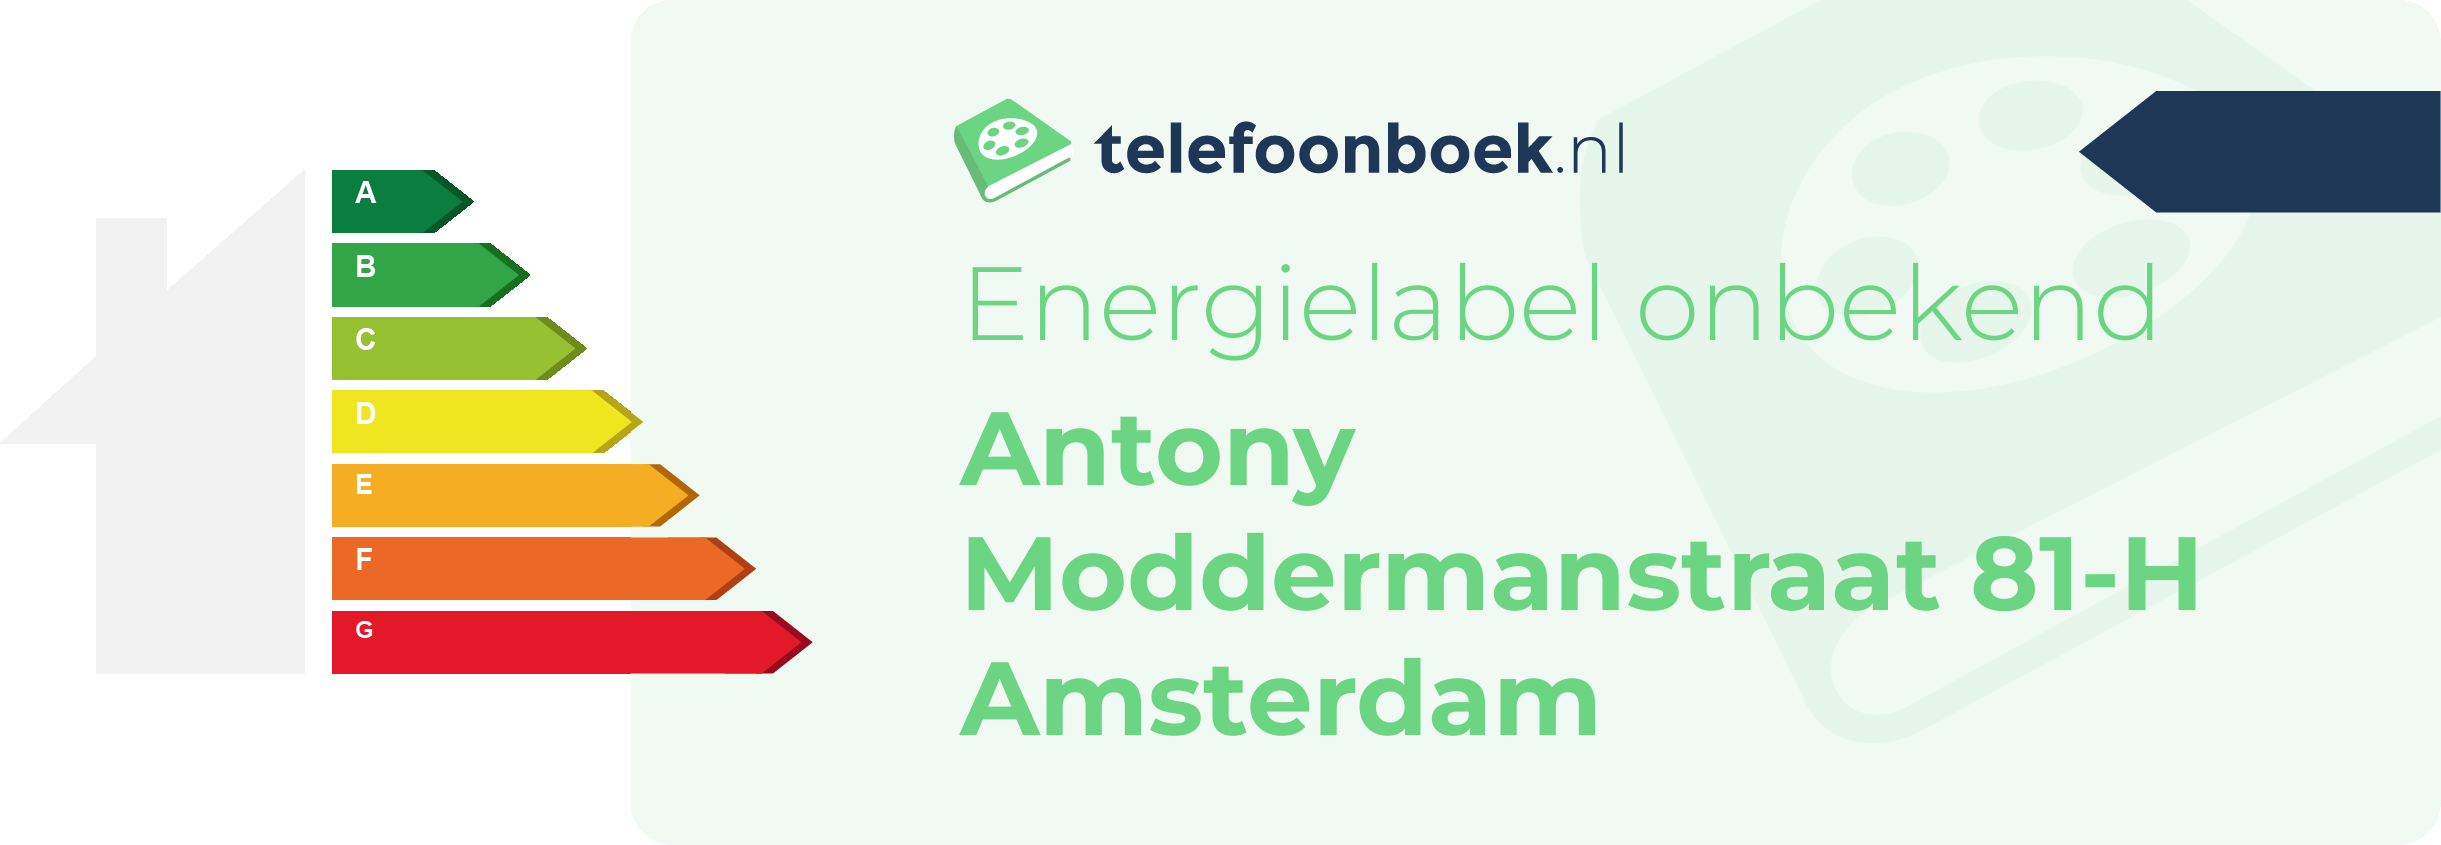 Energielabel Antony Moddermanstraat 81-H Amsterdam